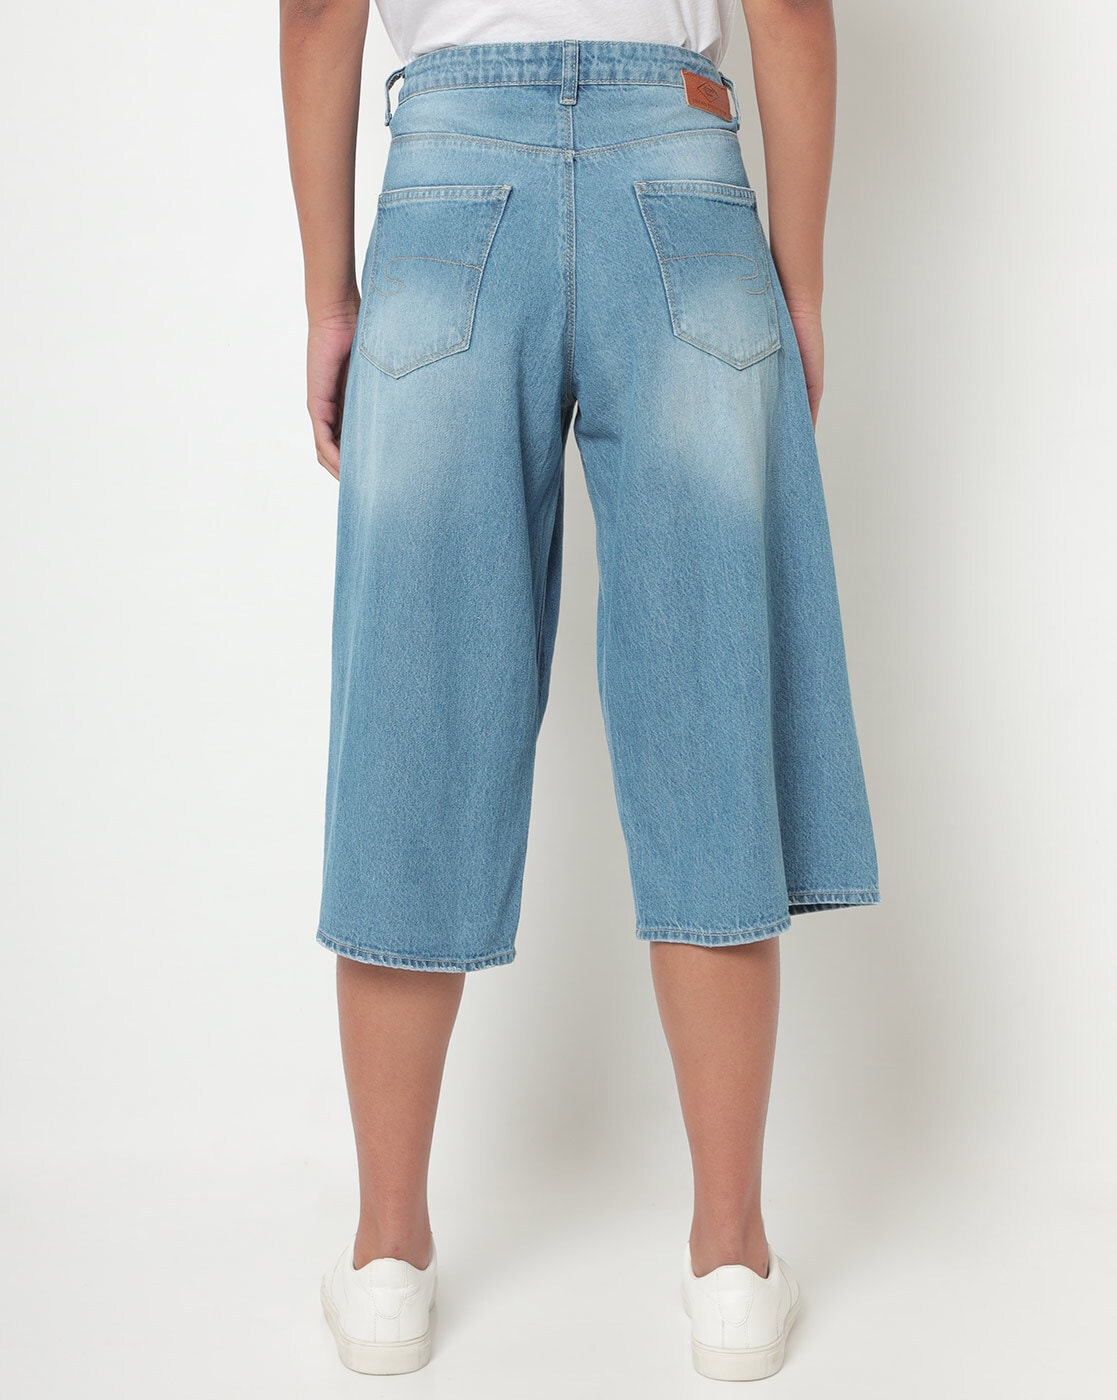 Style & Co. Jeans Womens Size 10 Blue Capri Pants Cotton / Spandex 89828